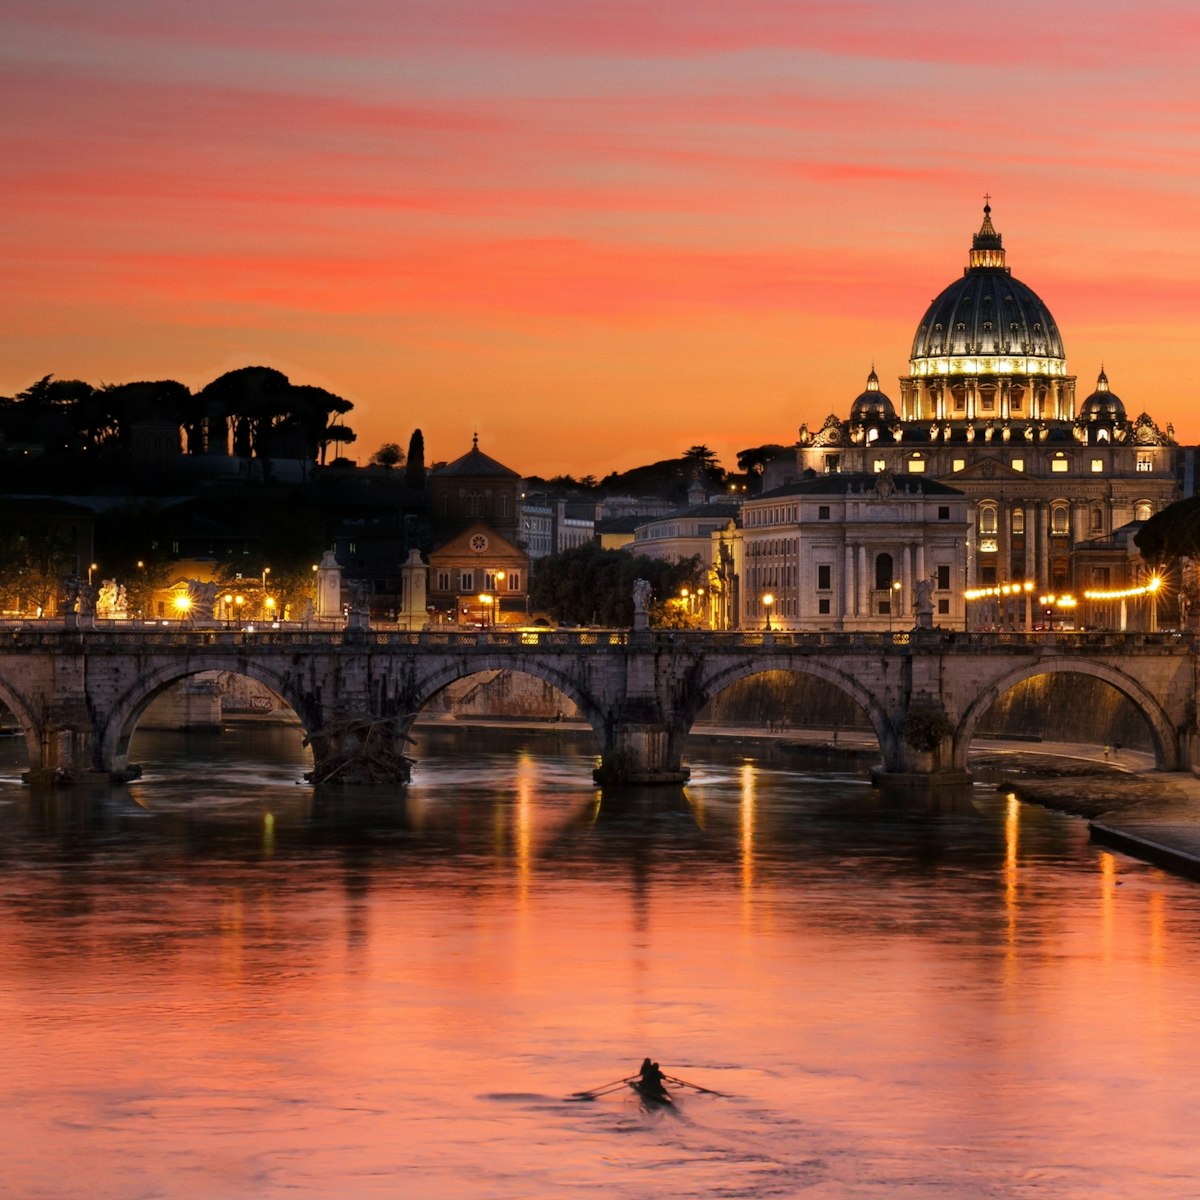 500px Photo ID: 87791381 - Vue de la basilique Saint-Pierre depuis le pont Umberto I sur le Tibre, prise en avril 2014...Basilica di San Pietro in Vaticano, Roma.